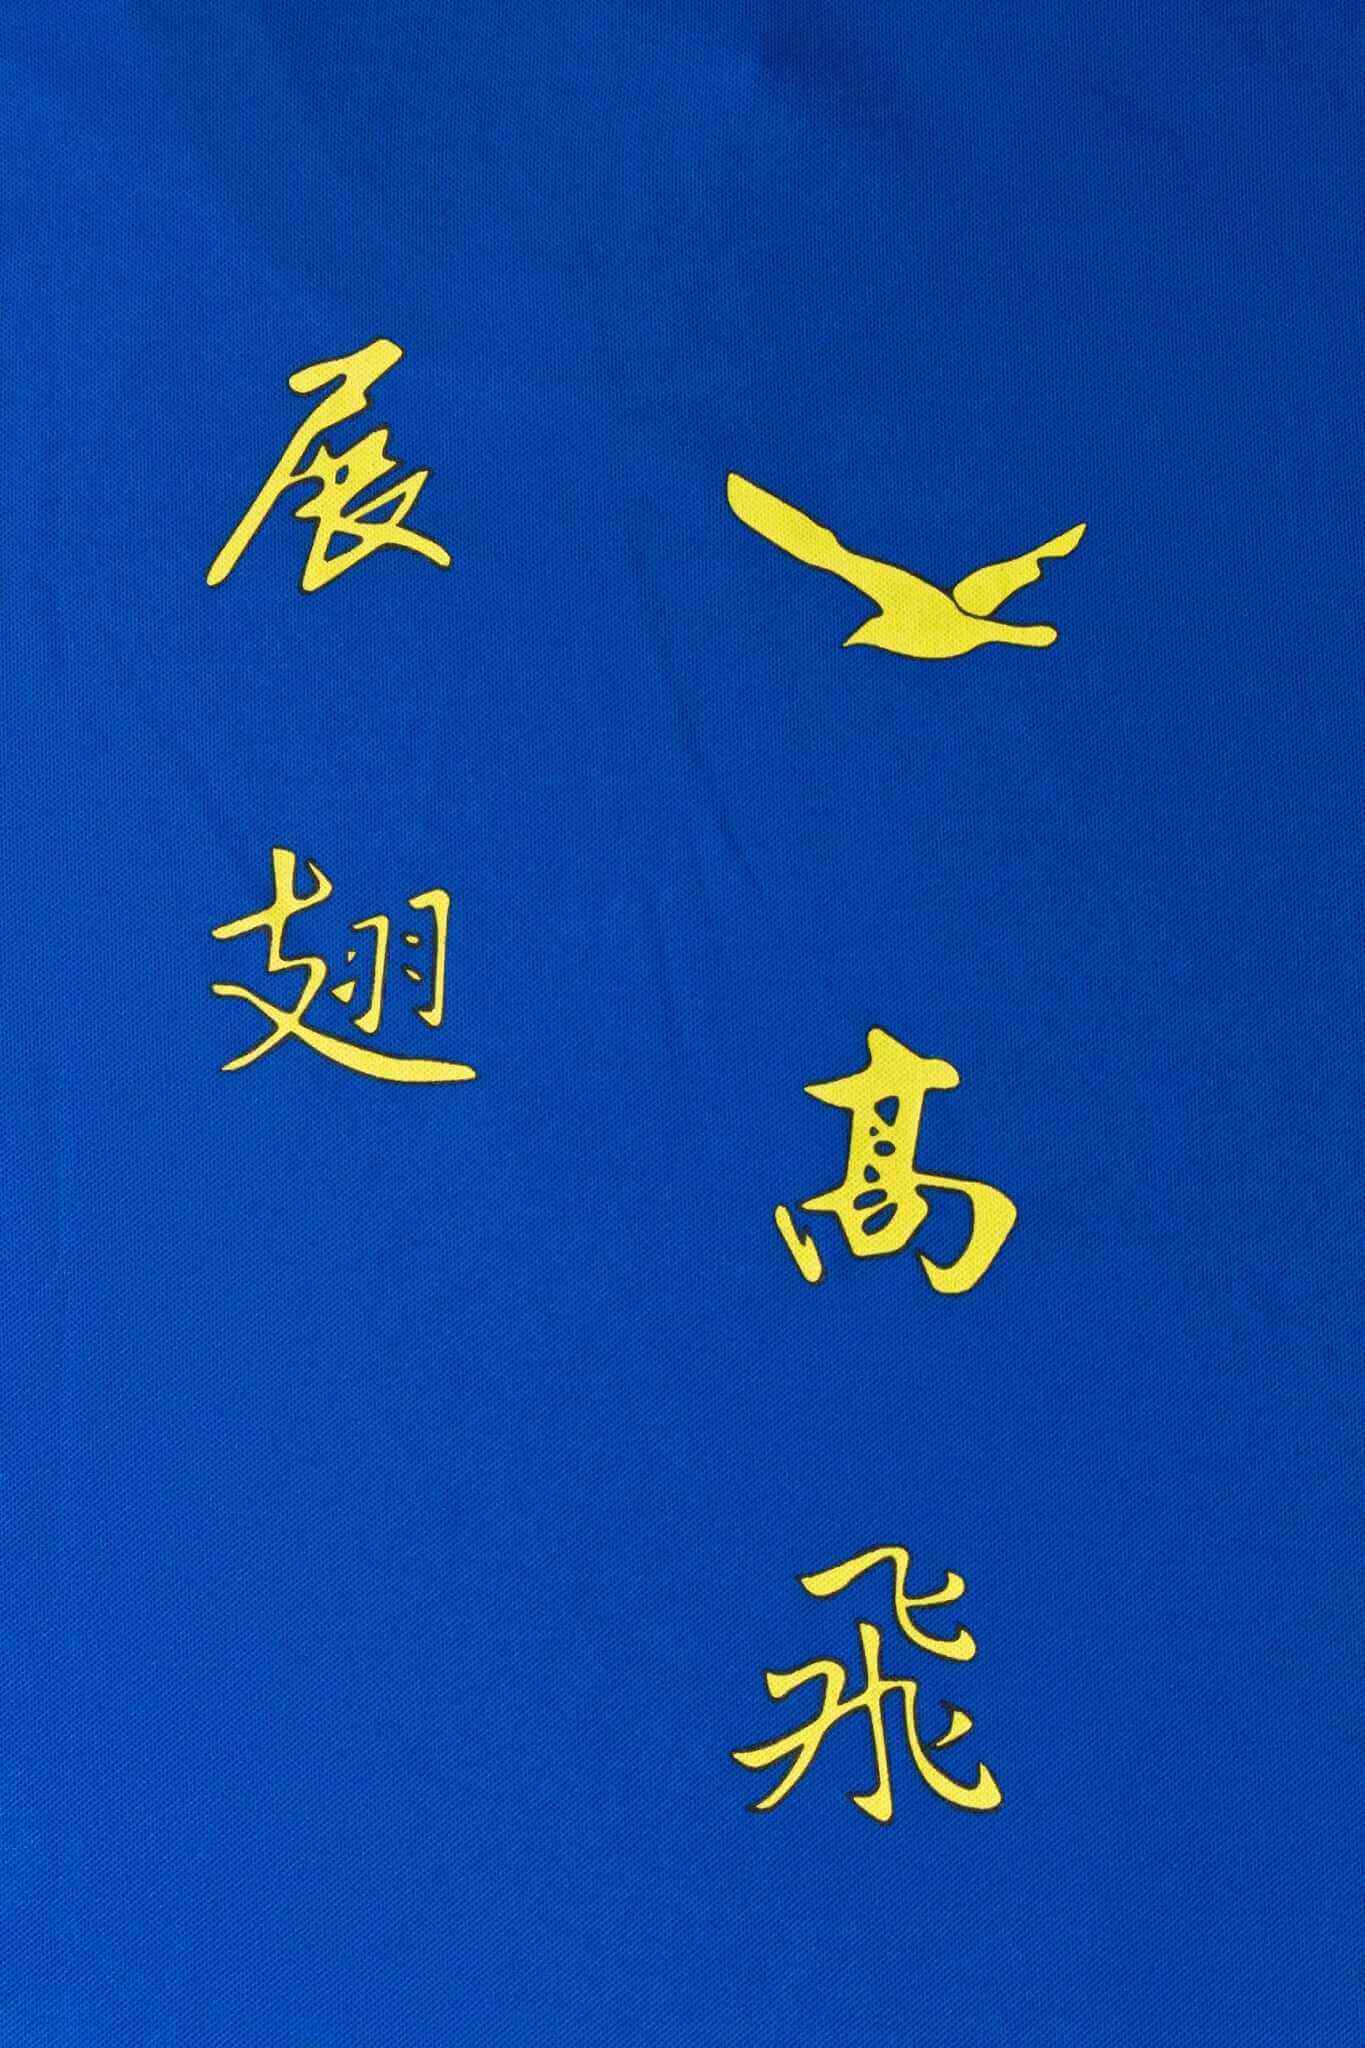 客製化T恤-展翅高飛 客製T恤的第2張圖(客製化公司制服、班服製作、團體服製作等示意或作品圖)